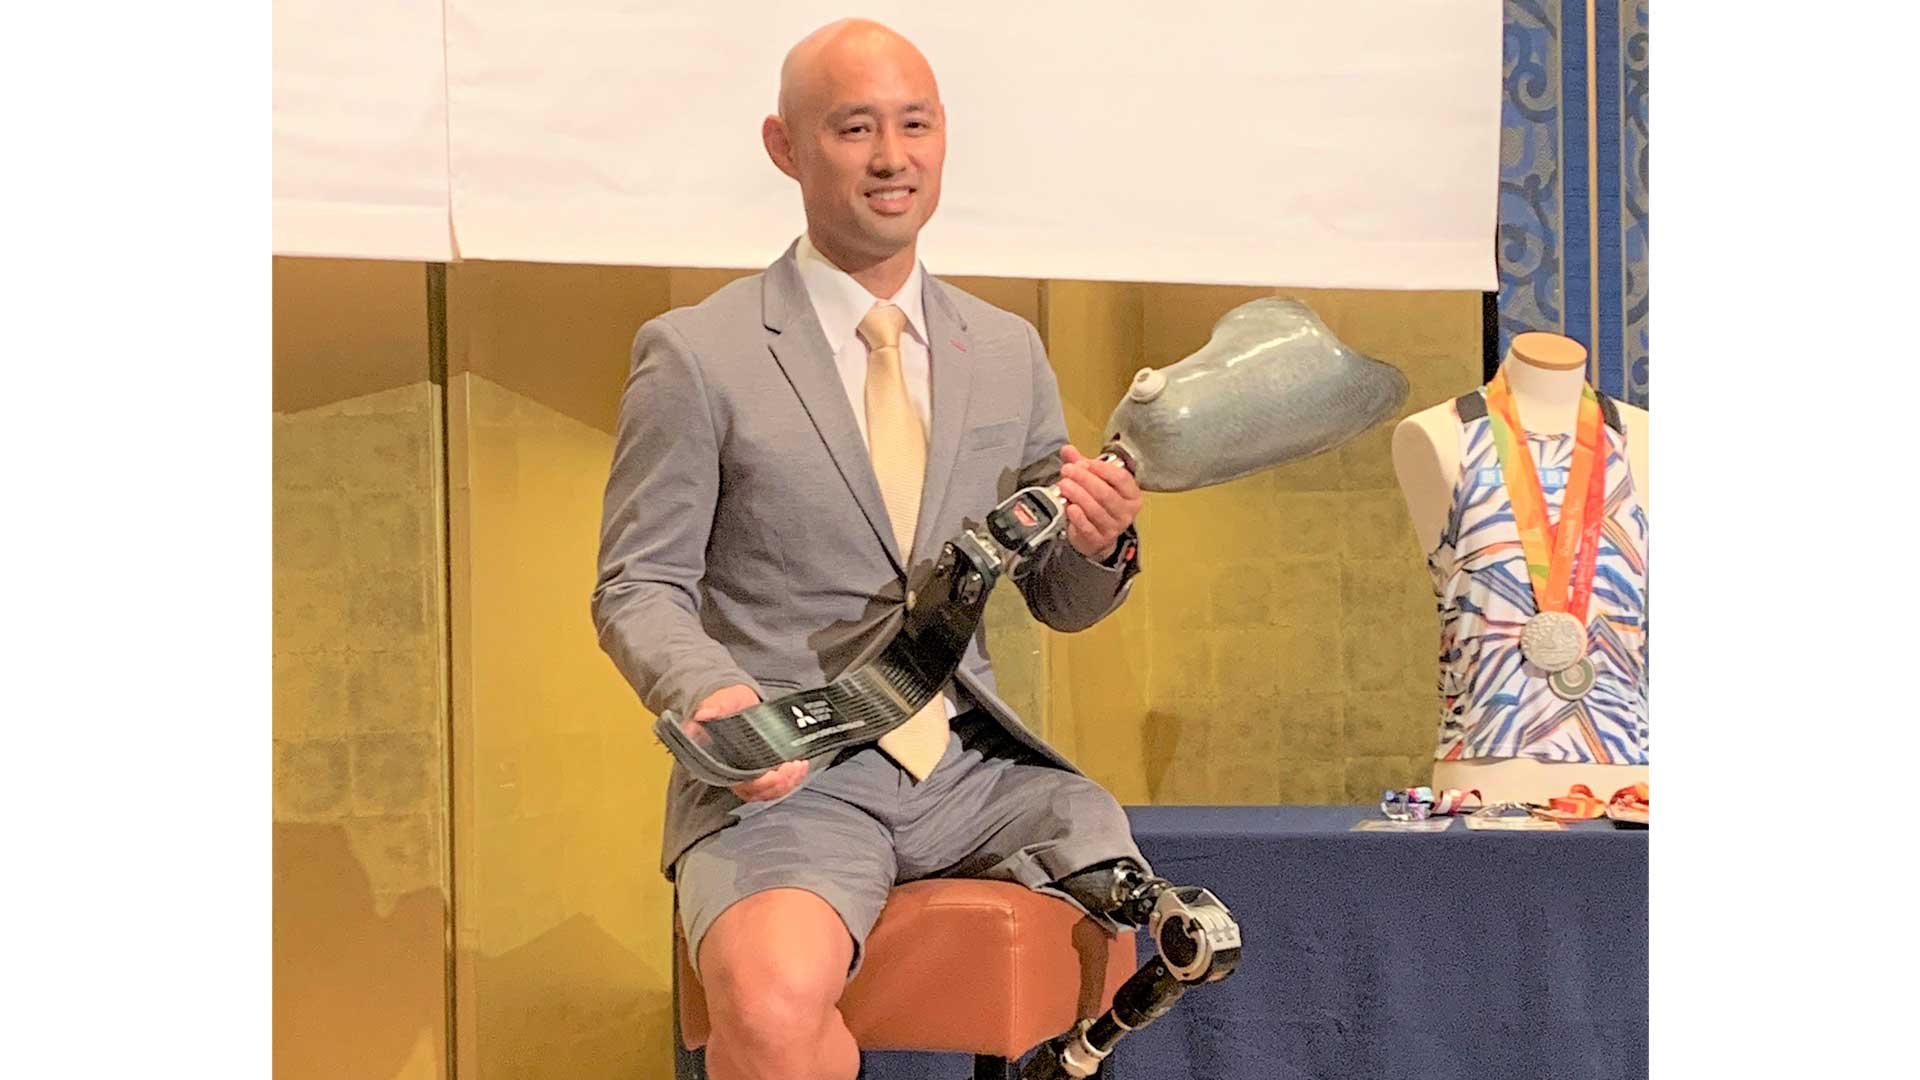 パラ陸上のレジェンド、42歳・山本篤が引退会見「すごくいい陸上人生だった」義足選手として初のパラリンピックメダリスト